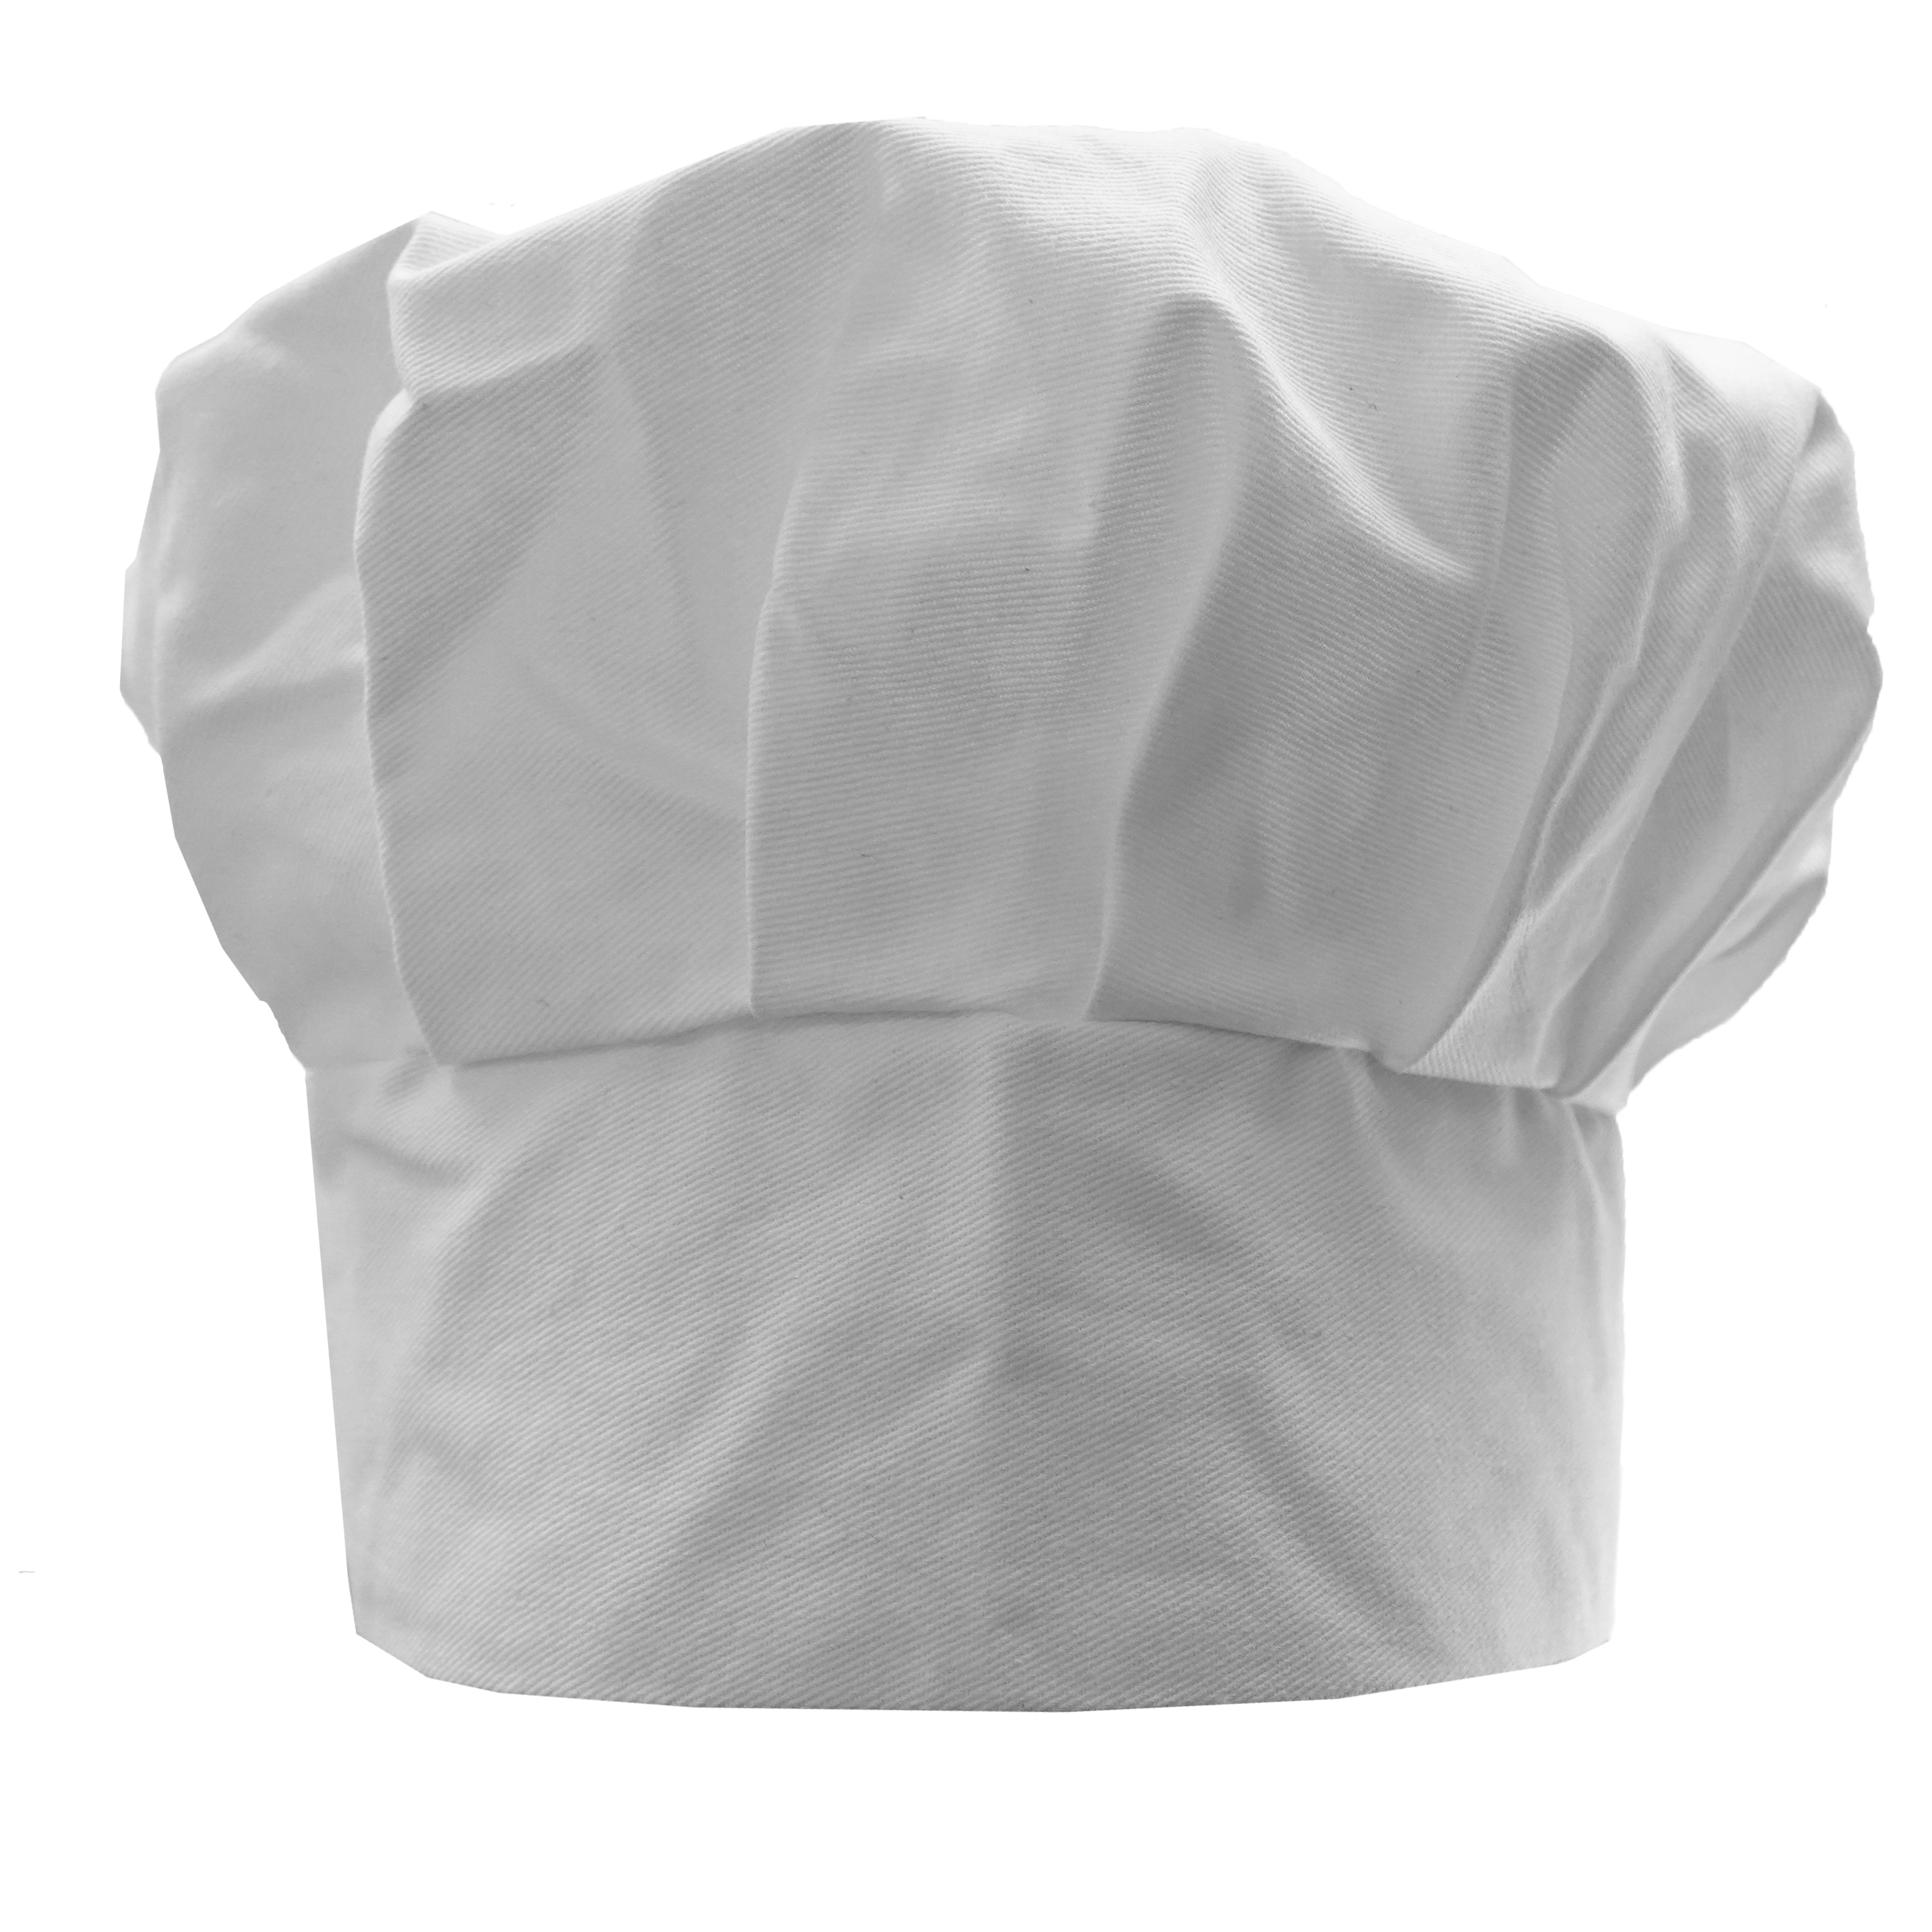 Kochschürze Set 2tlg Personalisierte Kochmütze Für Kinder Jungen und Mädchen Weiß Kochhaube Schürze mit Ihrem Wunschtext/Grafik Klettverschluss 099